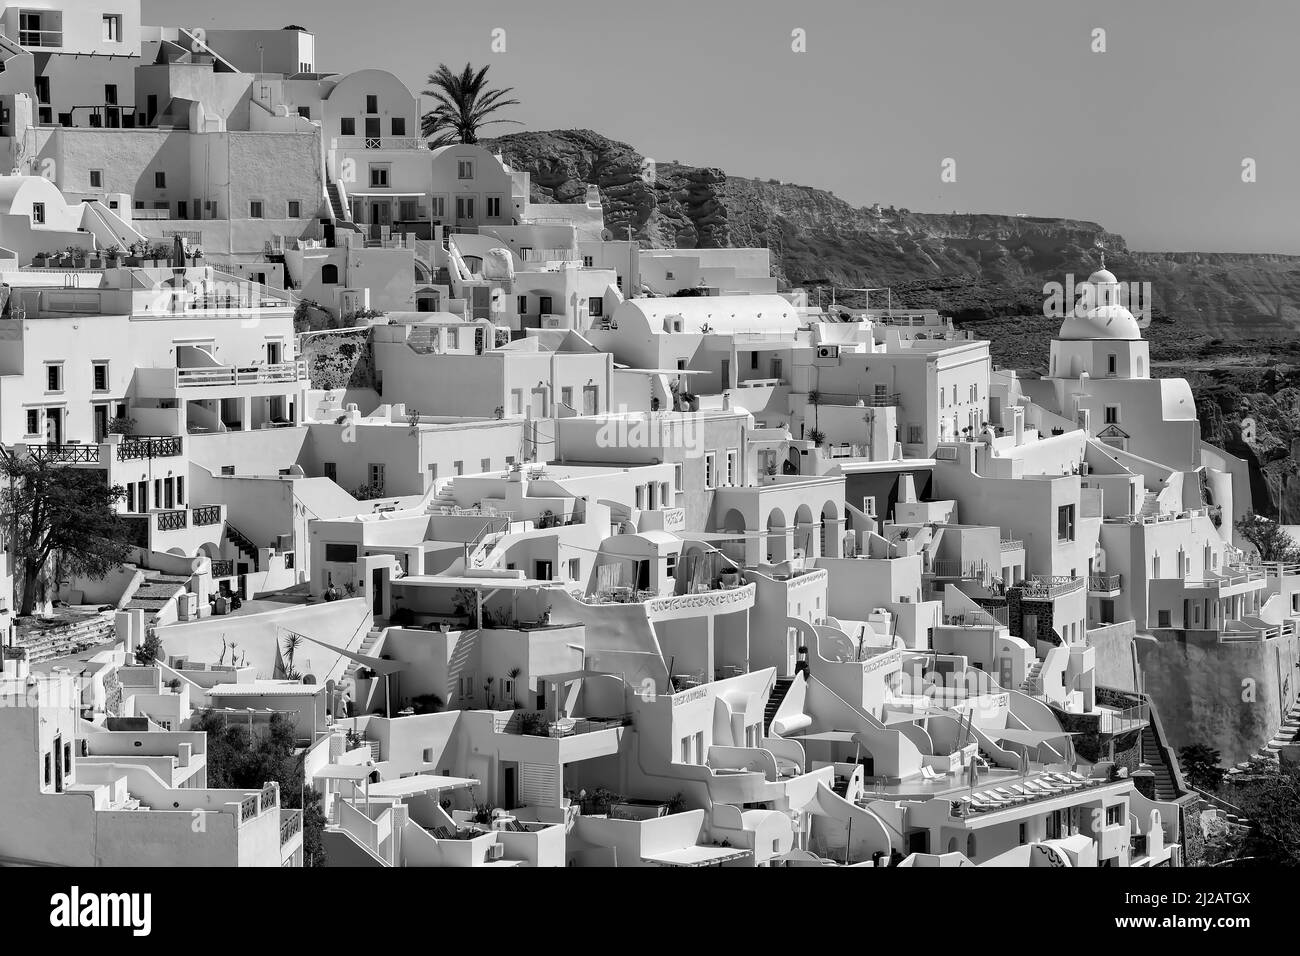 Vista panoramica del pittoresco villaggio di Fira Santorini con i suoi hotel, ristoranti e ville in bianco e nero Foto Stock